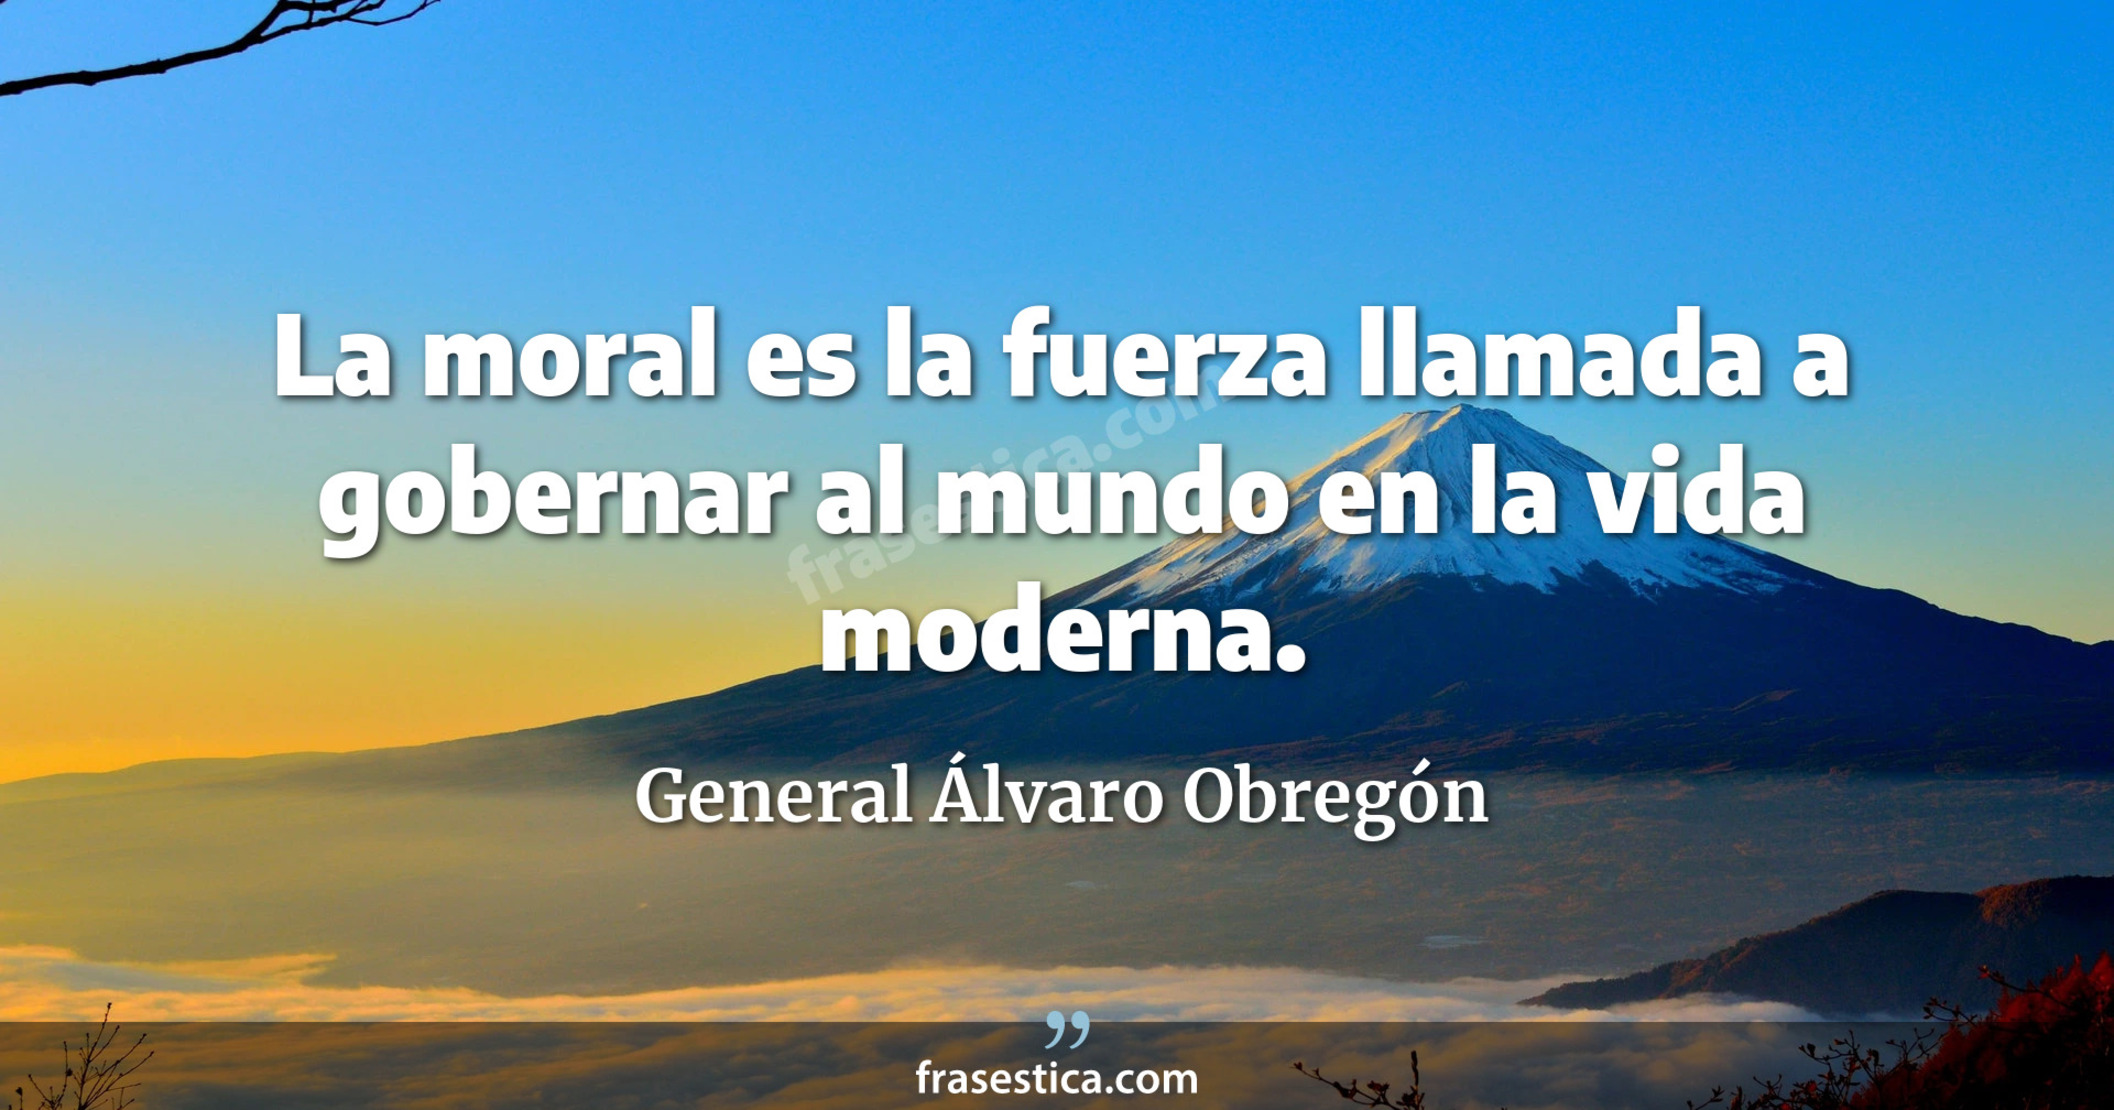 La moral es la fuerza llamada a gobernar al mundo en la vida moderna. - General Álvaro Obregón